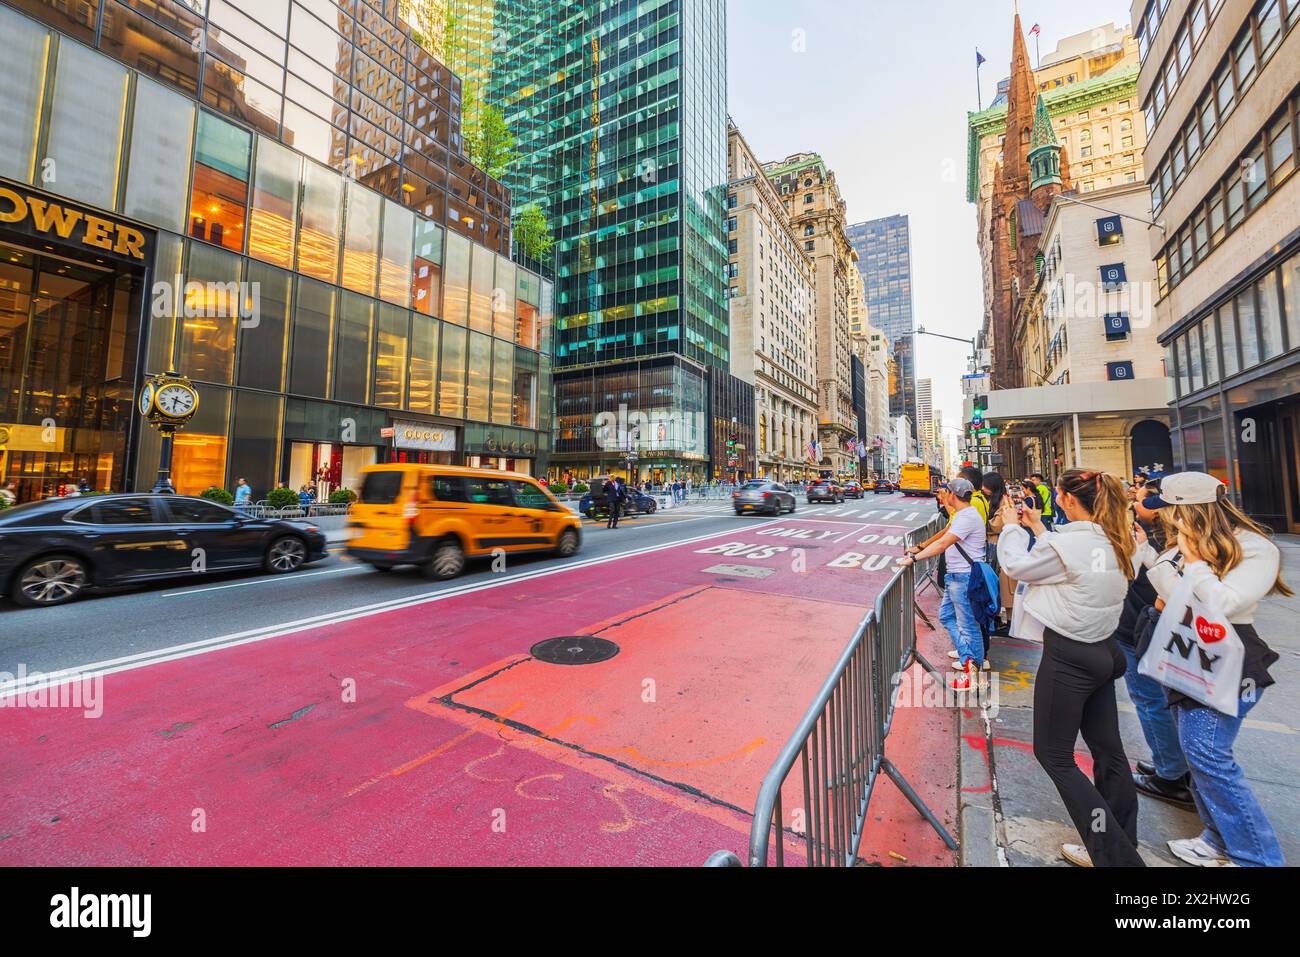 Wunderschöner Blick auf die pulsierende Straßenszene vor dem Trump Tower an der 5th Avenue von New York, die das Wesen des städtischen Lebens mit Fußgängern und einfängt Stockfoto